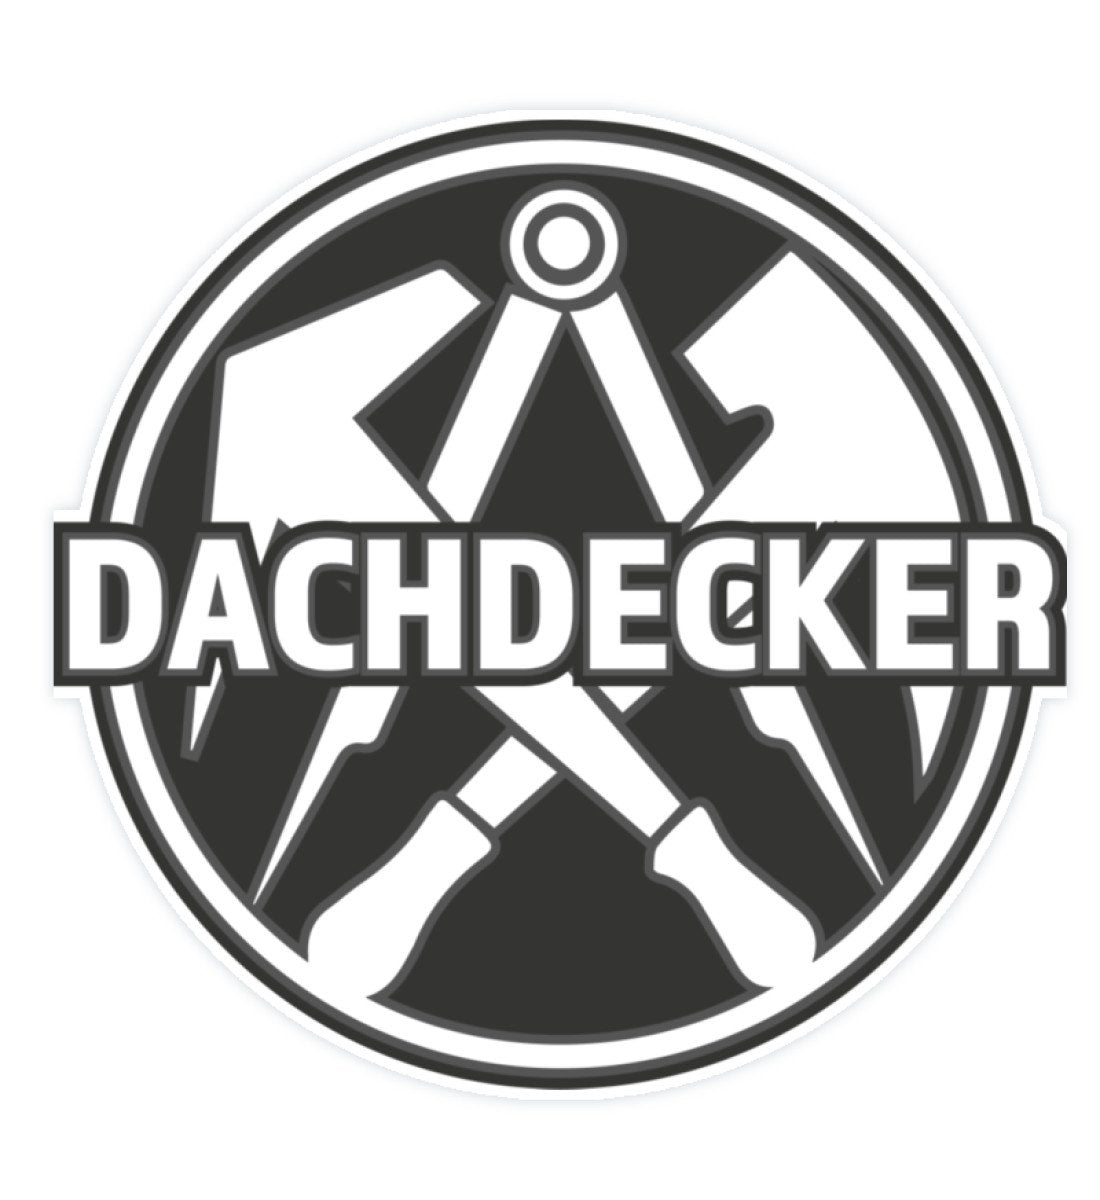 Dachdecker - Sticker ( 20 x 20 cm ) €9.95 Rooferking